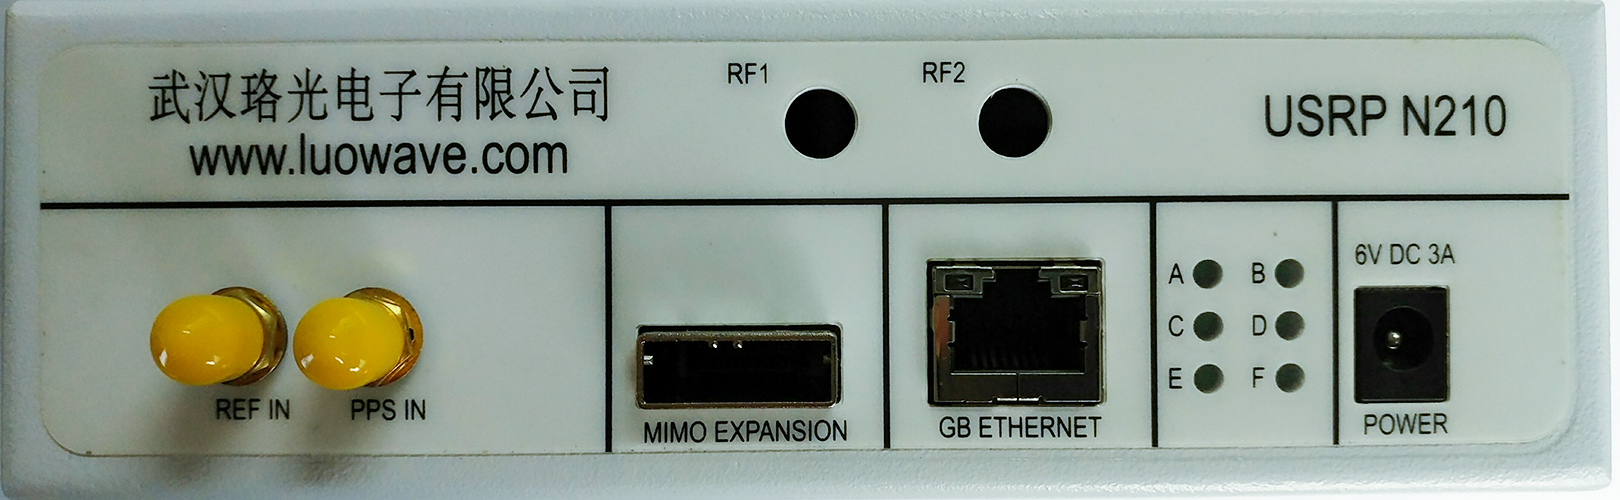 通用软件无线电平台网络型接口系列-USRP N210